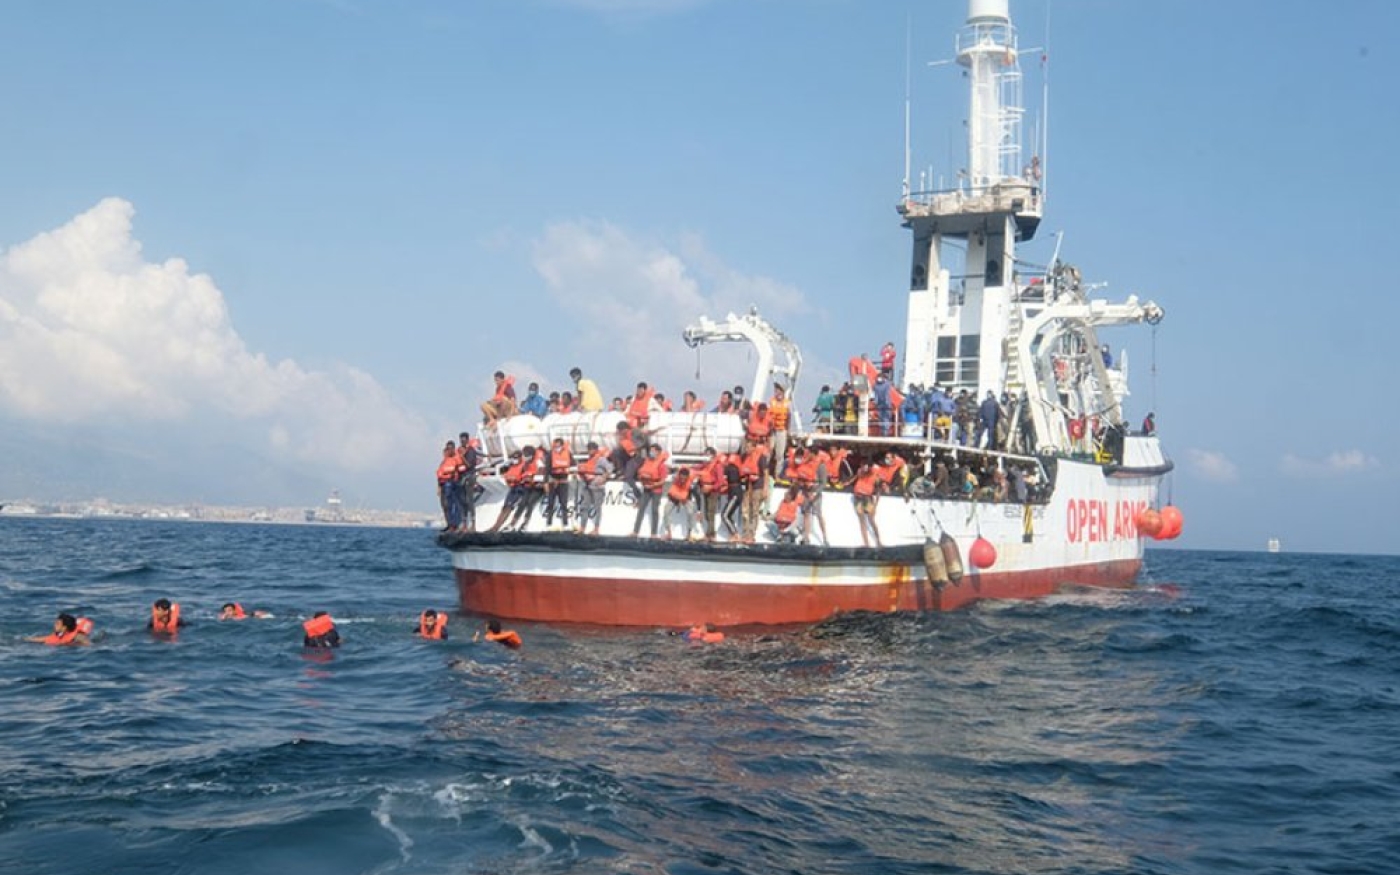 Près de la moitié des migrants à bord se sont jetés à l’eau au large de Palerme (MEE/Karlos Zurutuza)